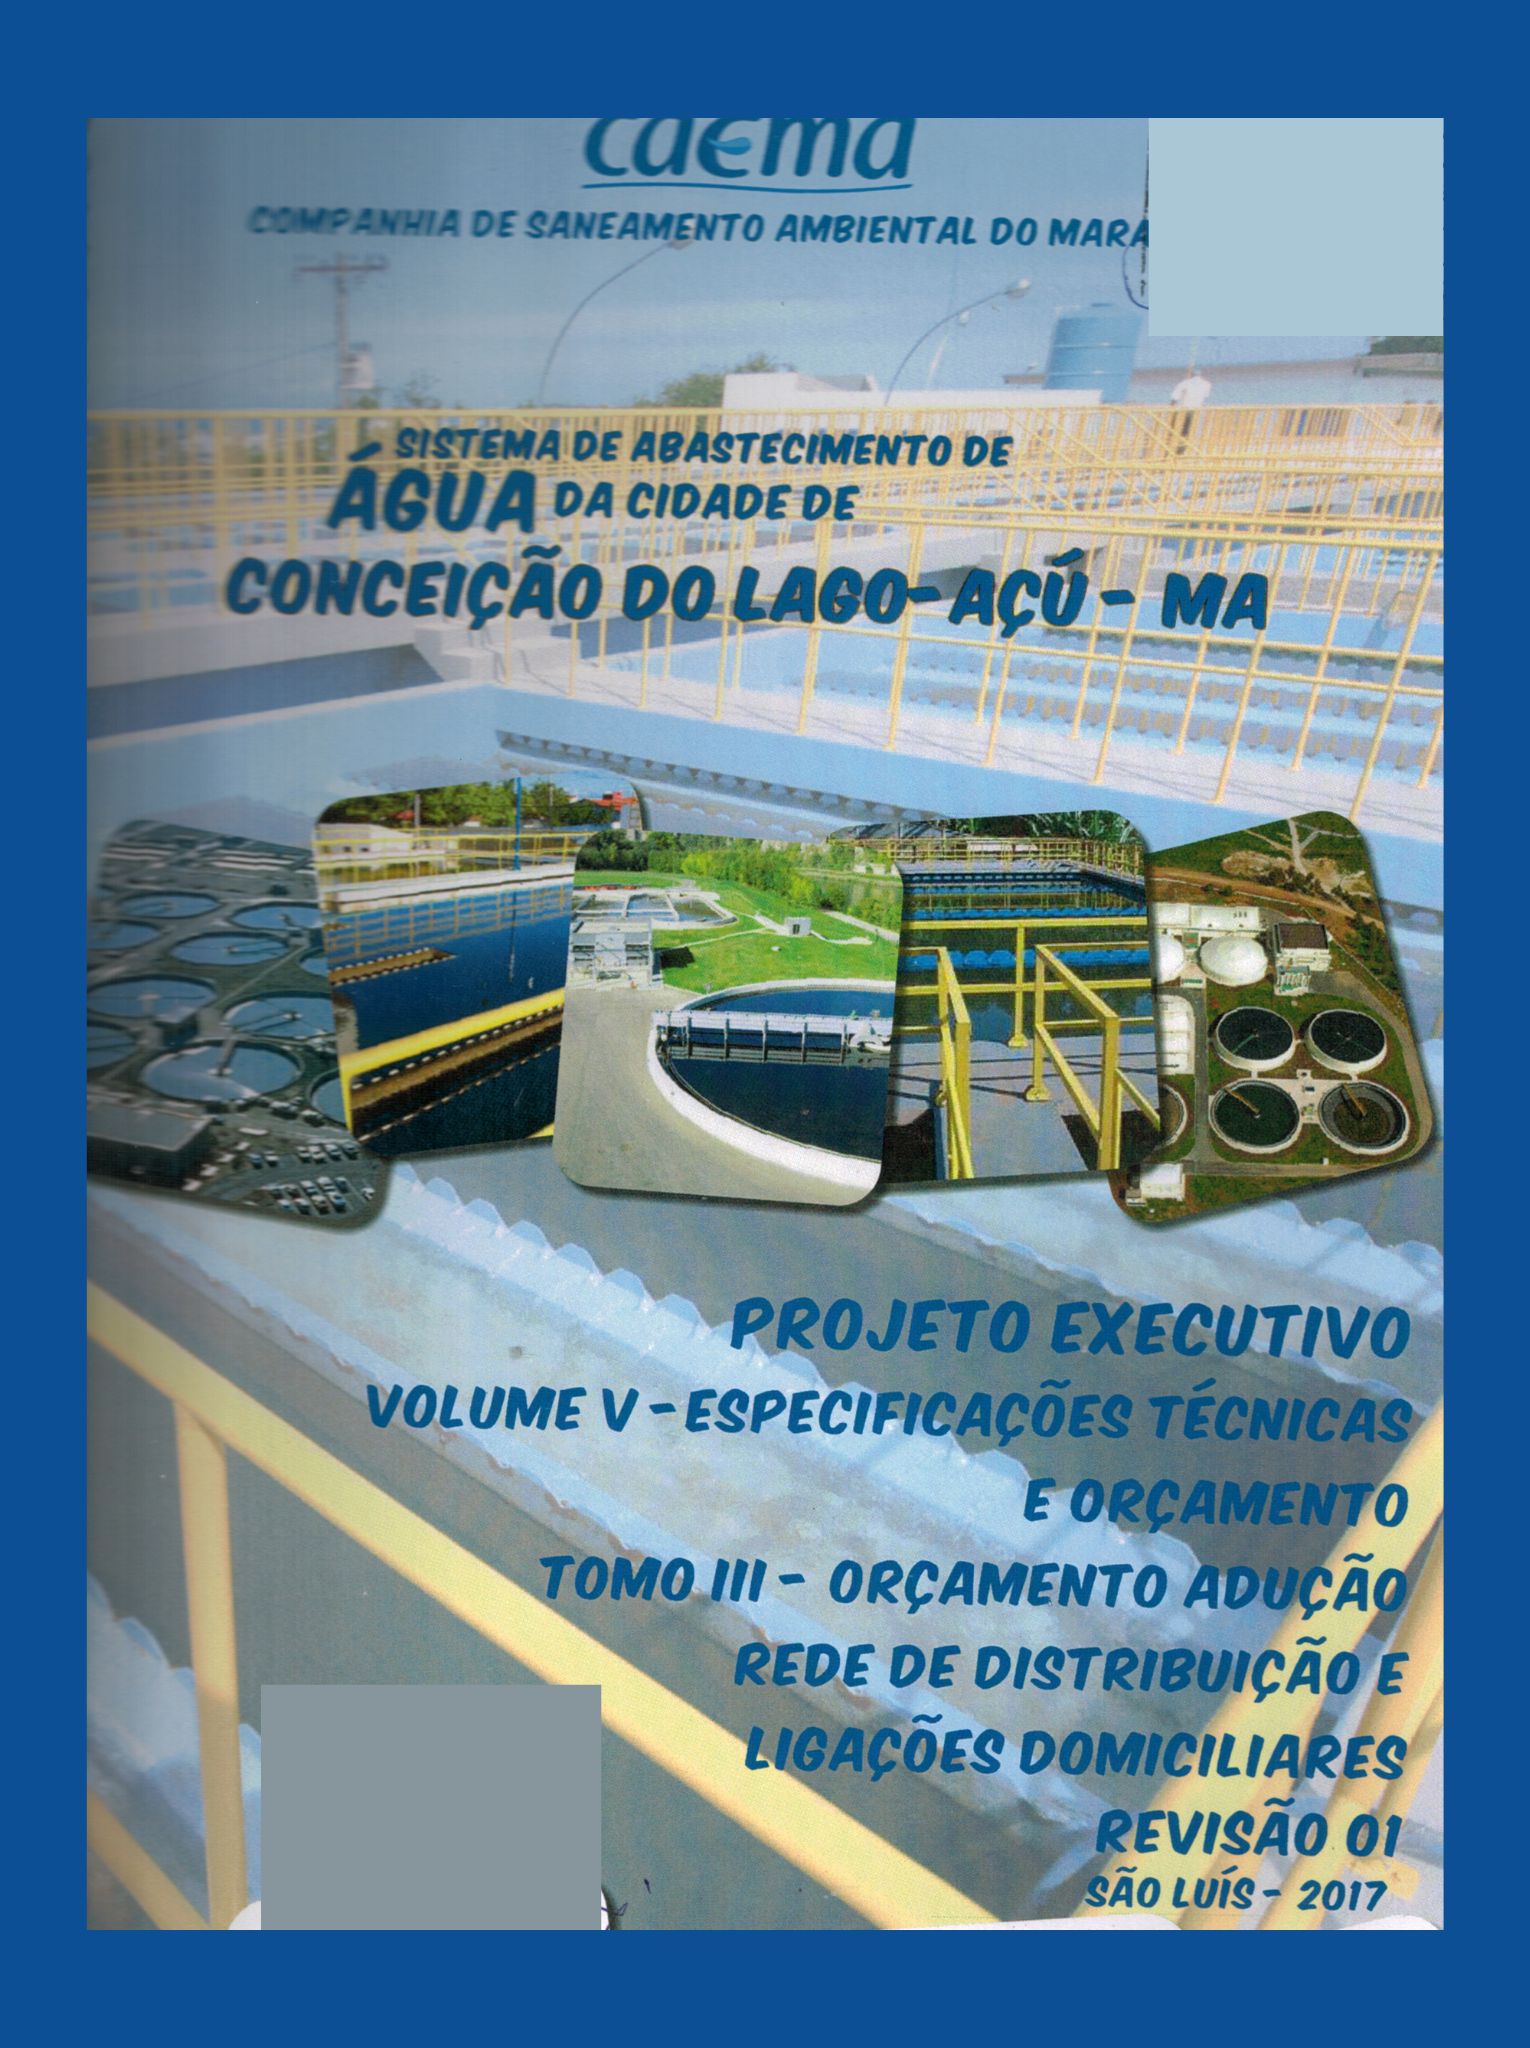 Imagem da capa do Projeto Técnico com informações de título e autoria.